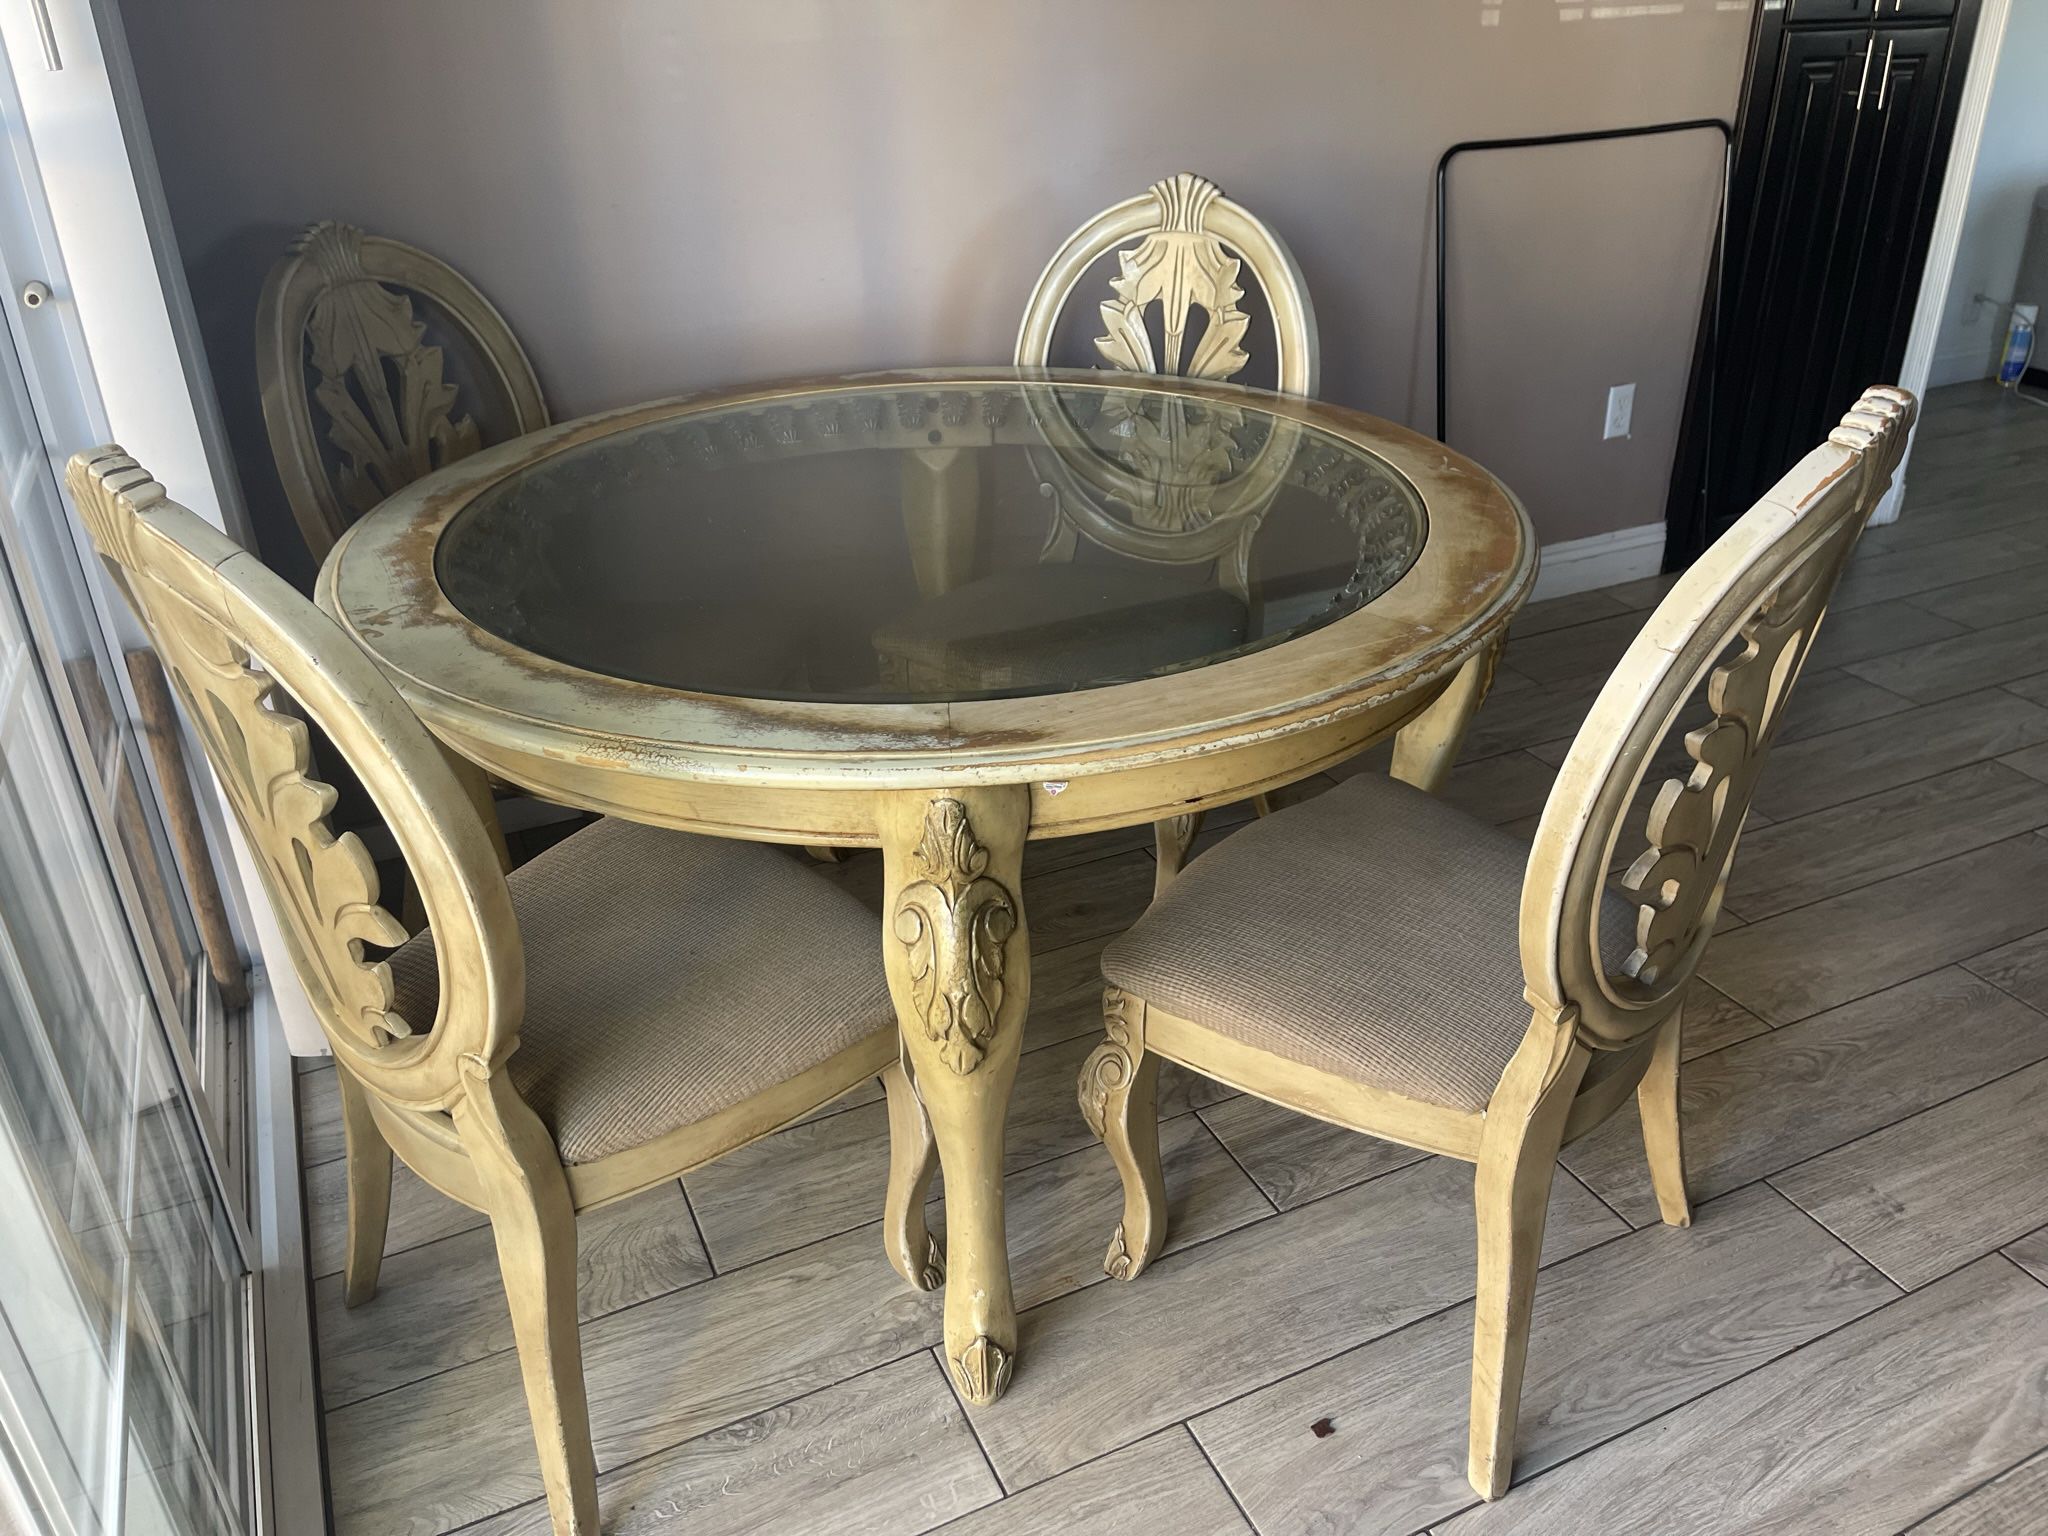 Round Wooden Kitchen table 